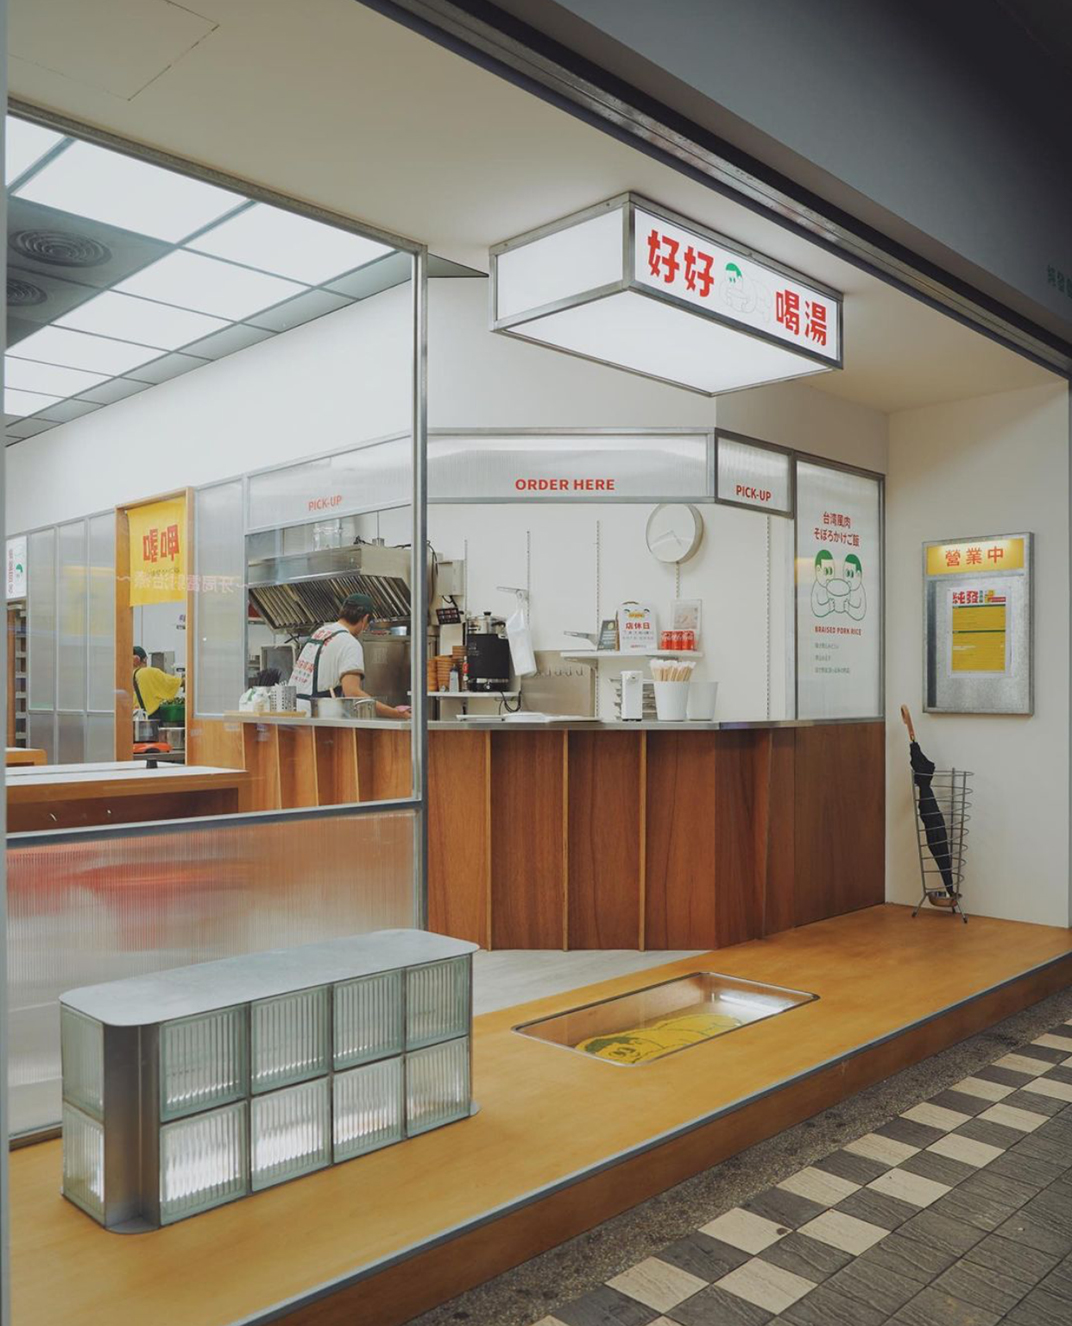 莼发鲁肉饭 好好喝汤 台湾 快餐店 卤肉饭 汤 太阳板 玻璃砖 亚克力 黄绿色 logo设计 vi设计 空间设计